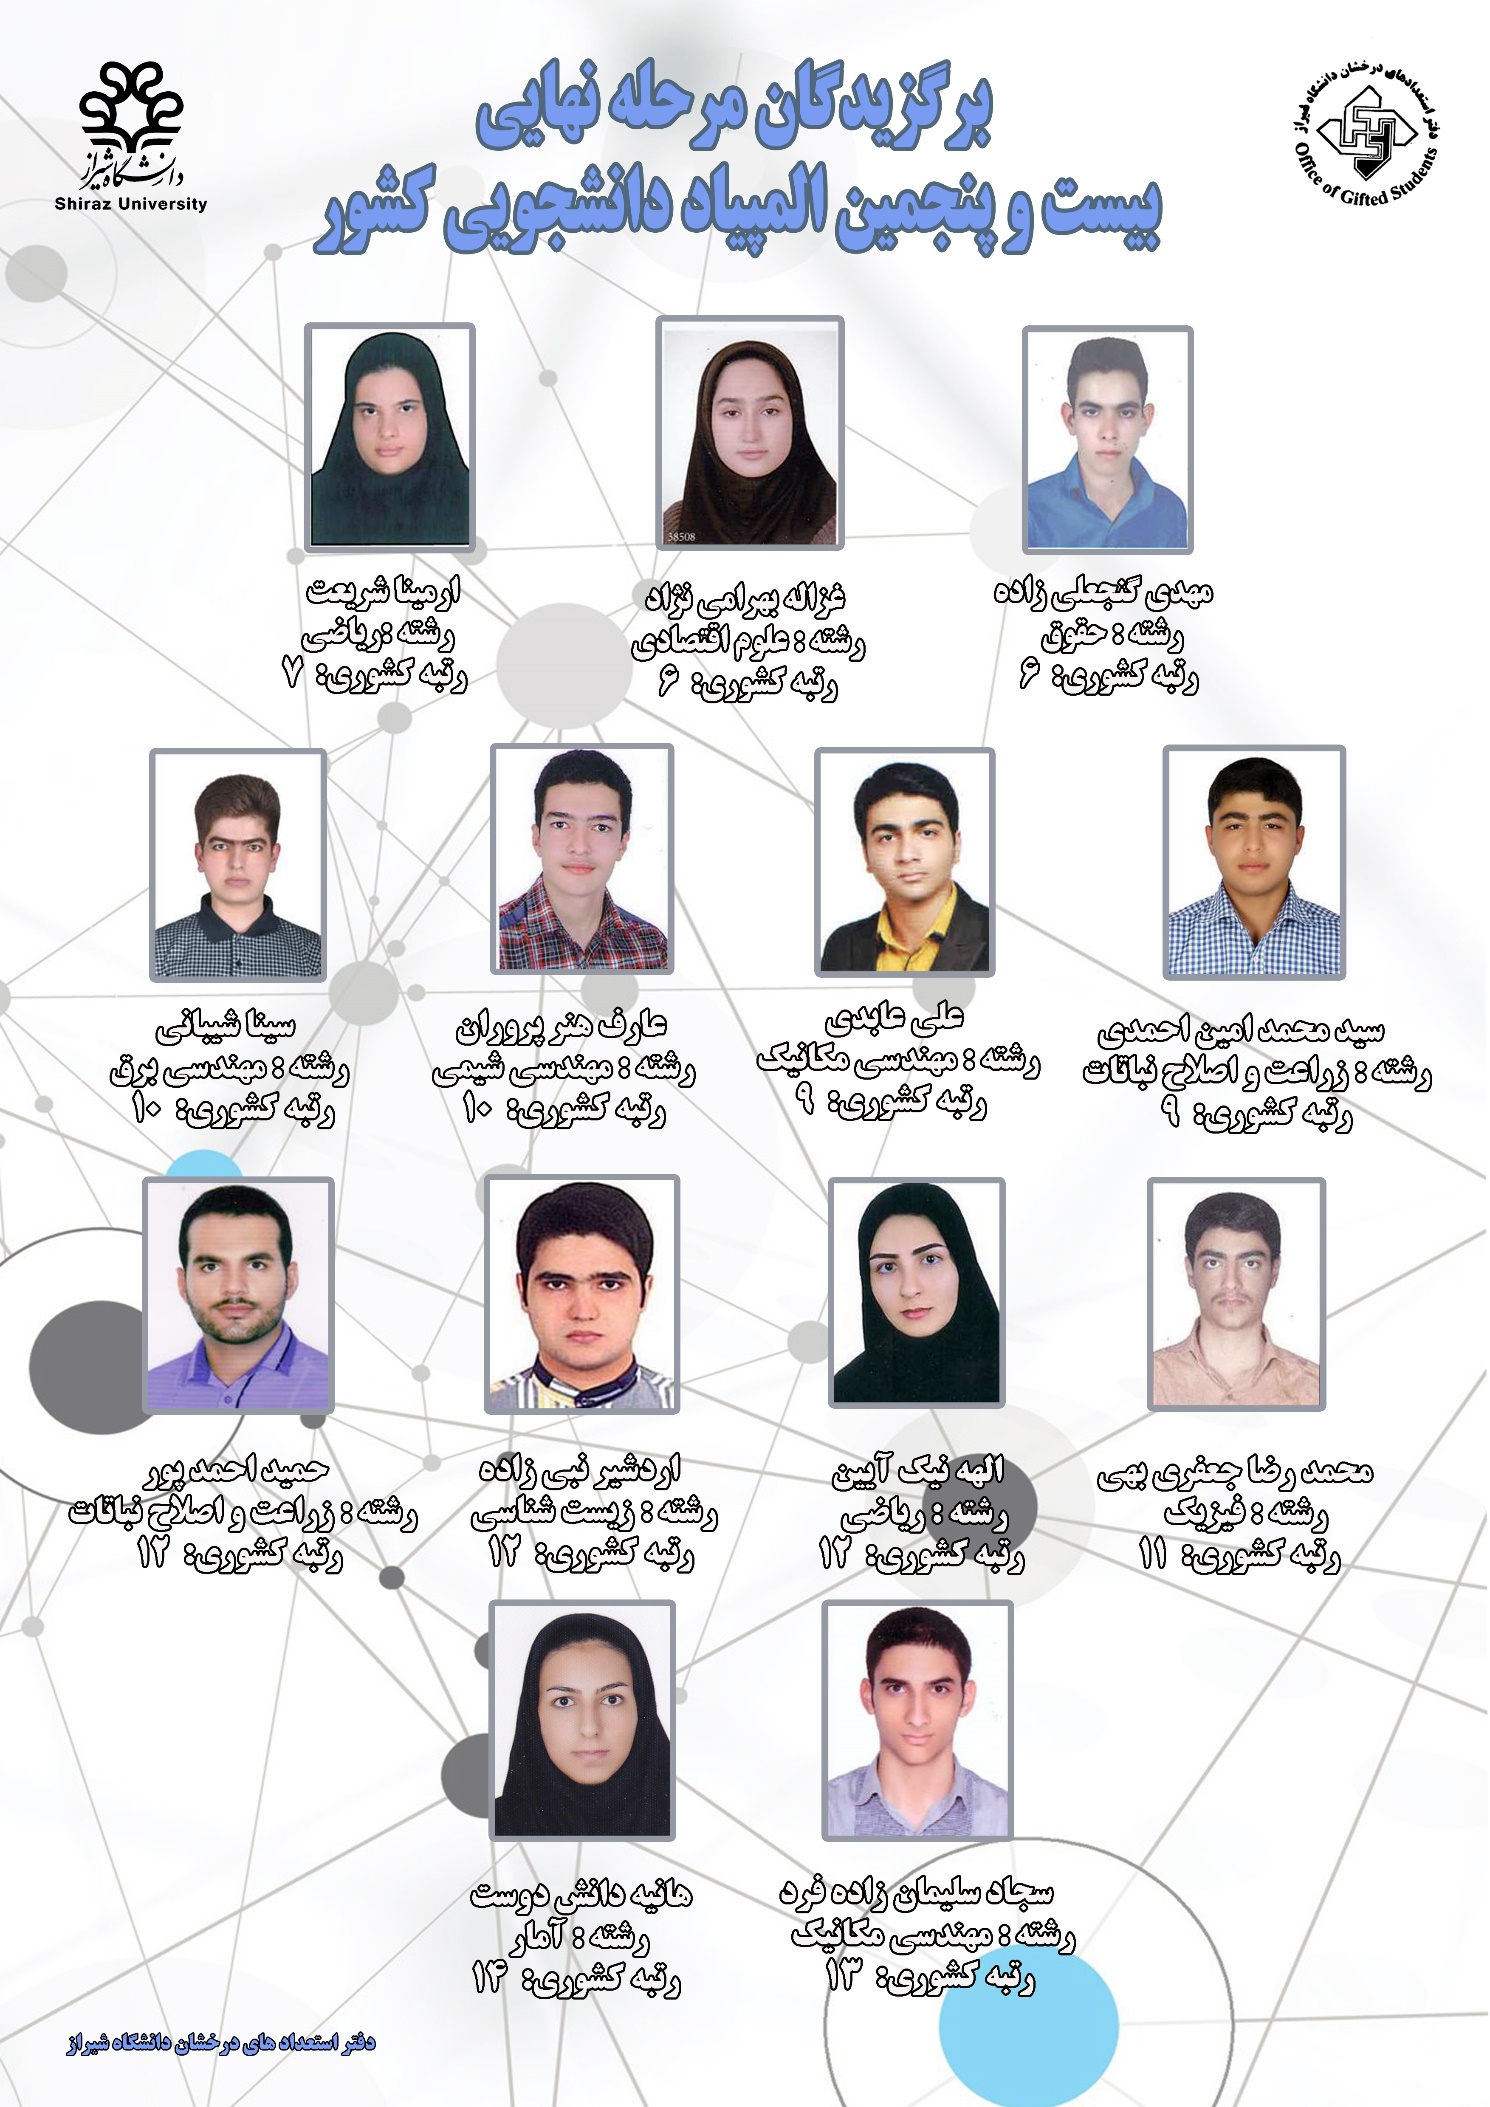  اسامی برگزیدگان المپیاد دانشجویی دانشگاه شیراز اعلام شد